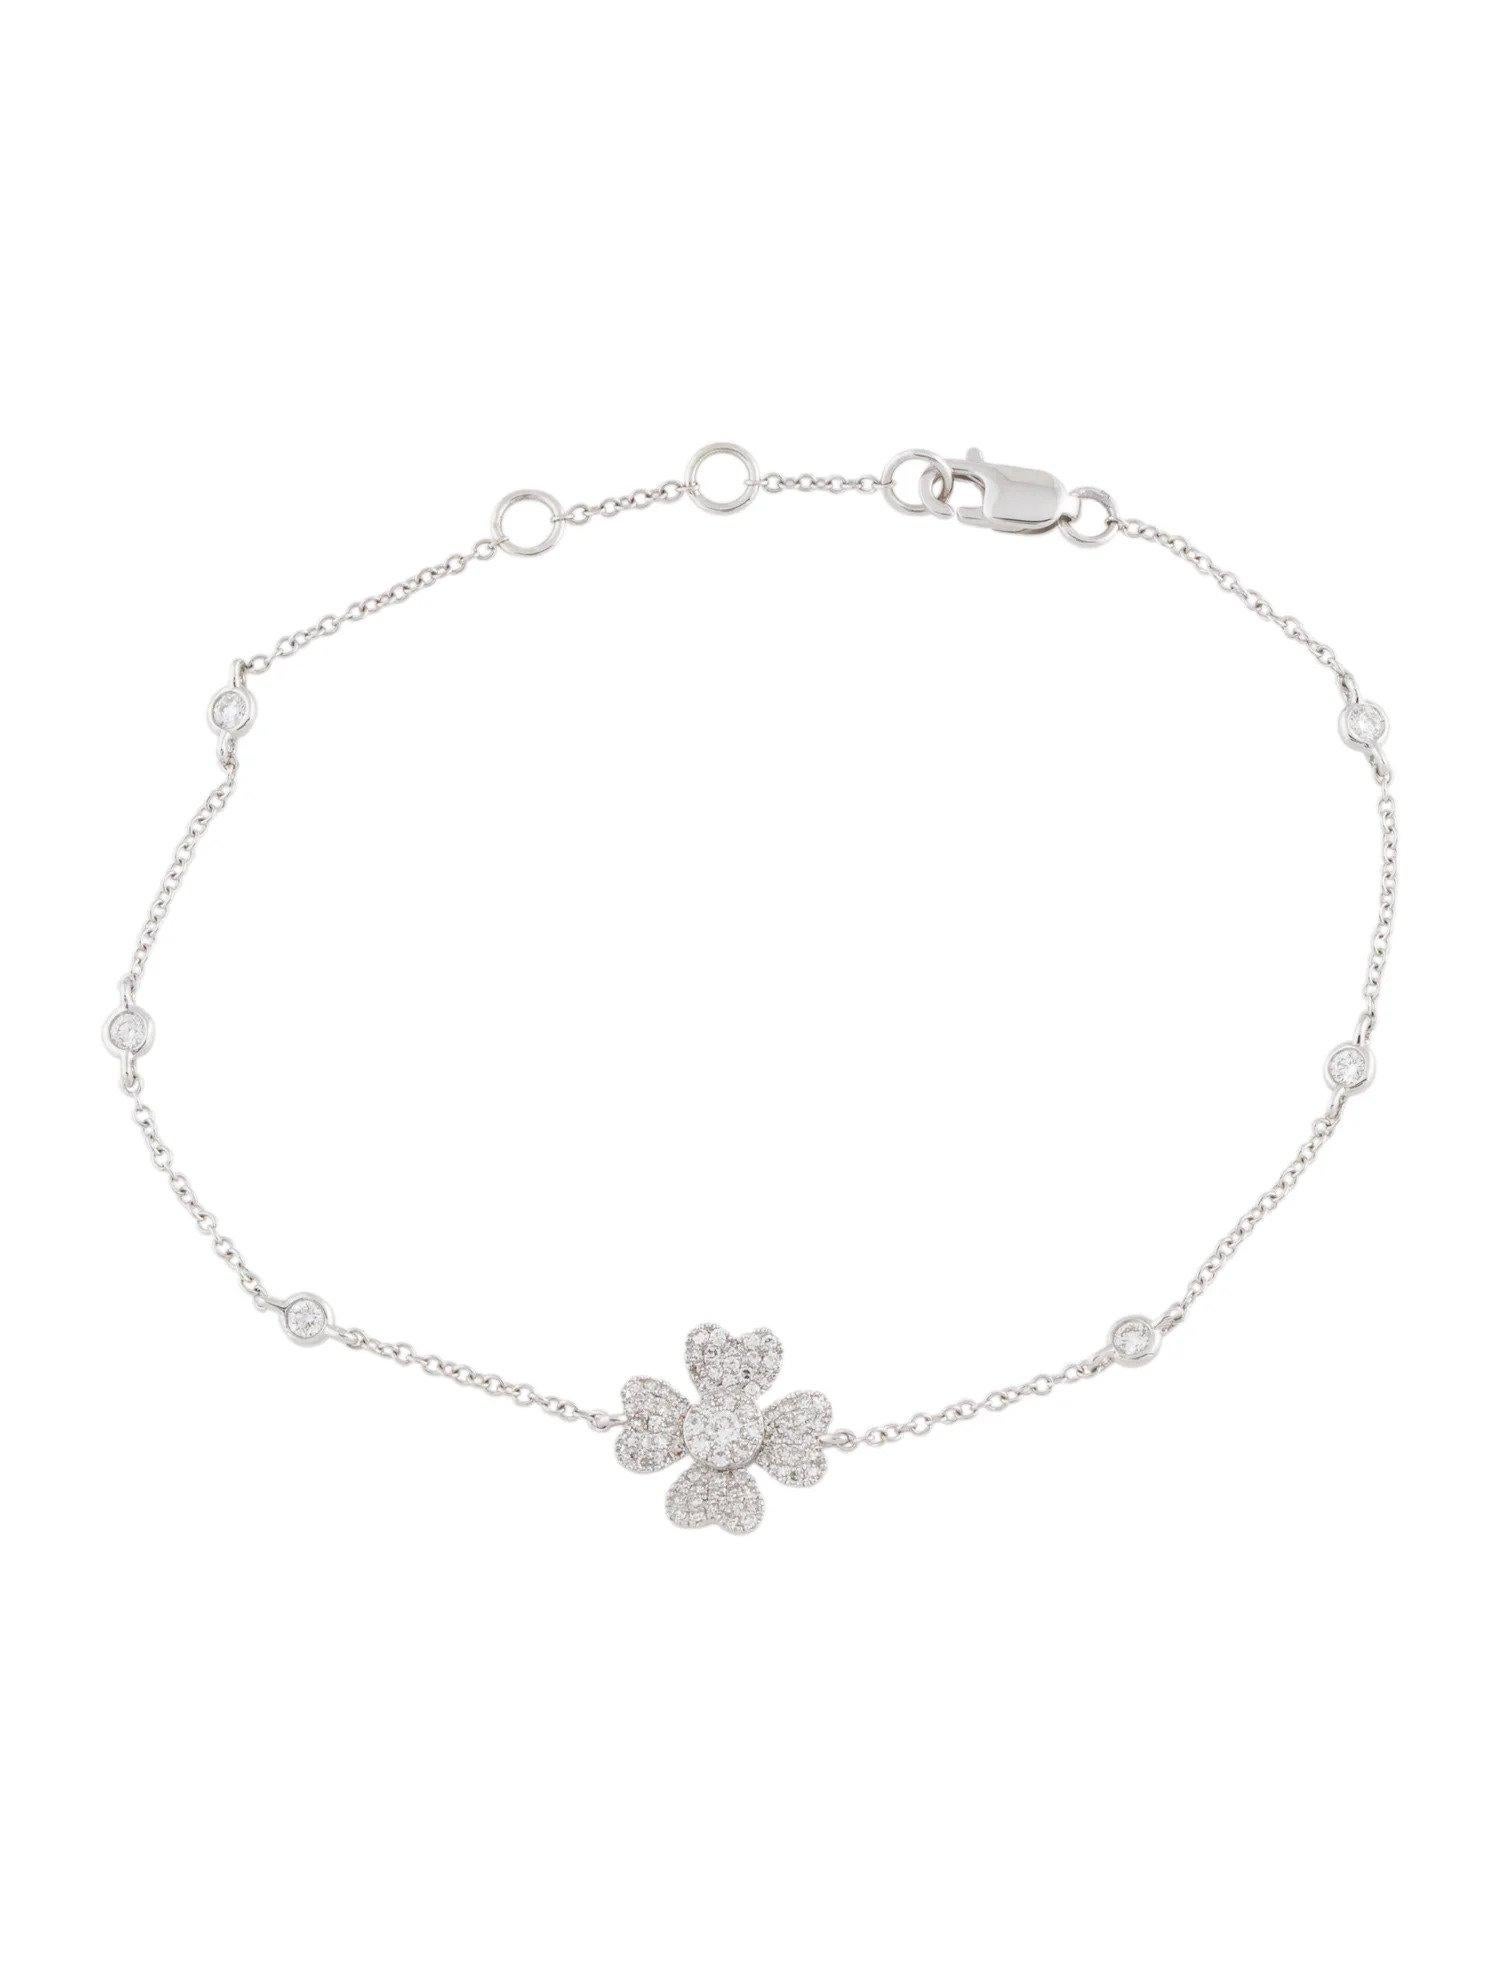 Contemporary 14K White Gold Diamond Flower Chain Bracelet For Sale